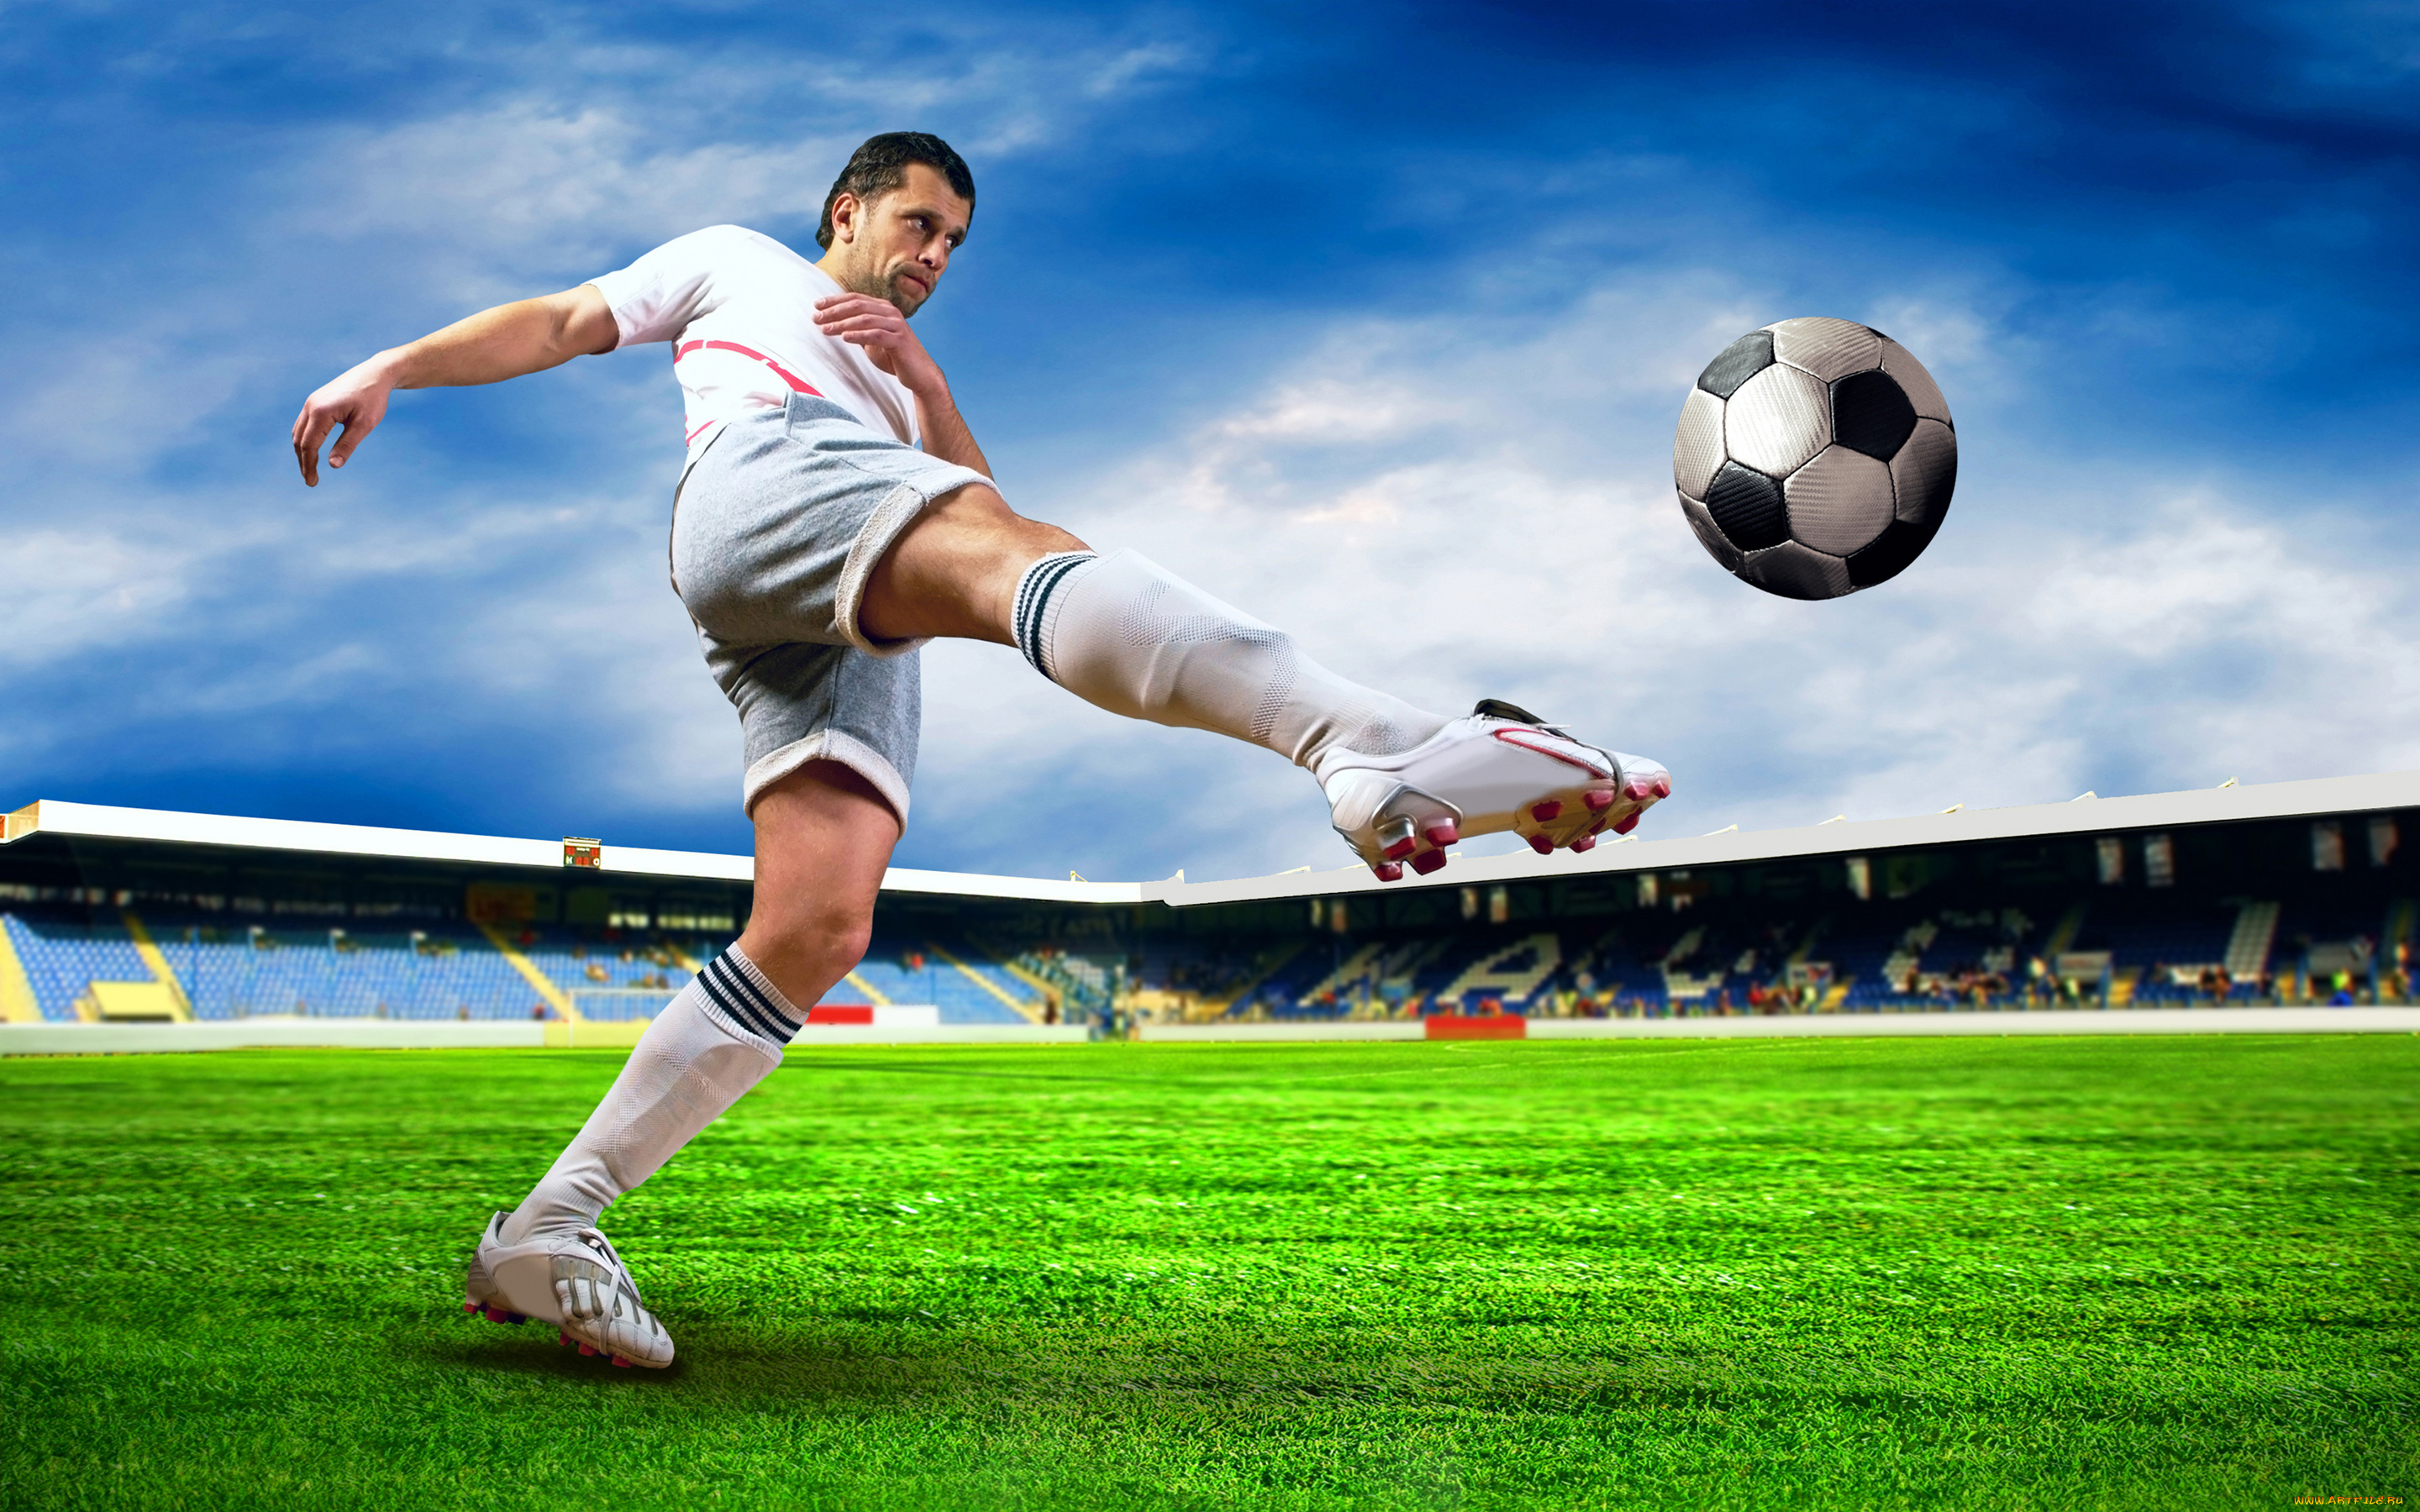 Спортивный сайт футбола. Футбол. Спорт футбол. Футболисты на поле. Футболист пинает мяч.